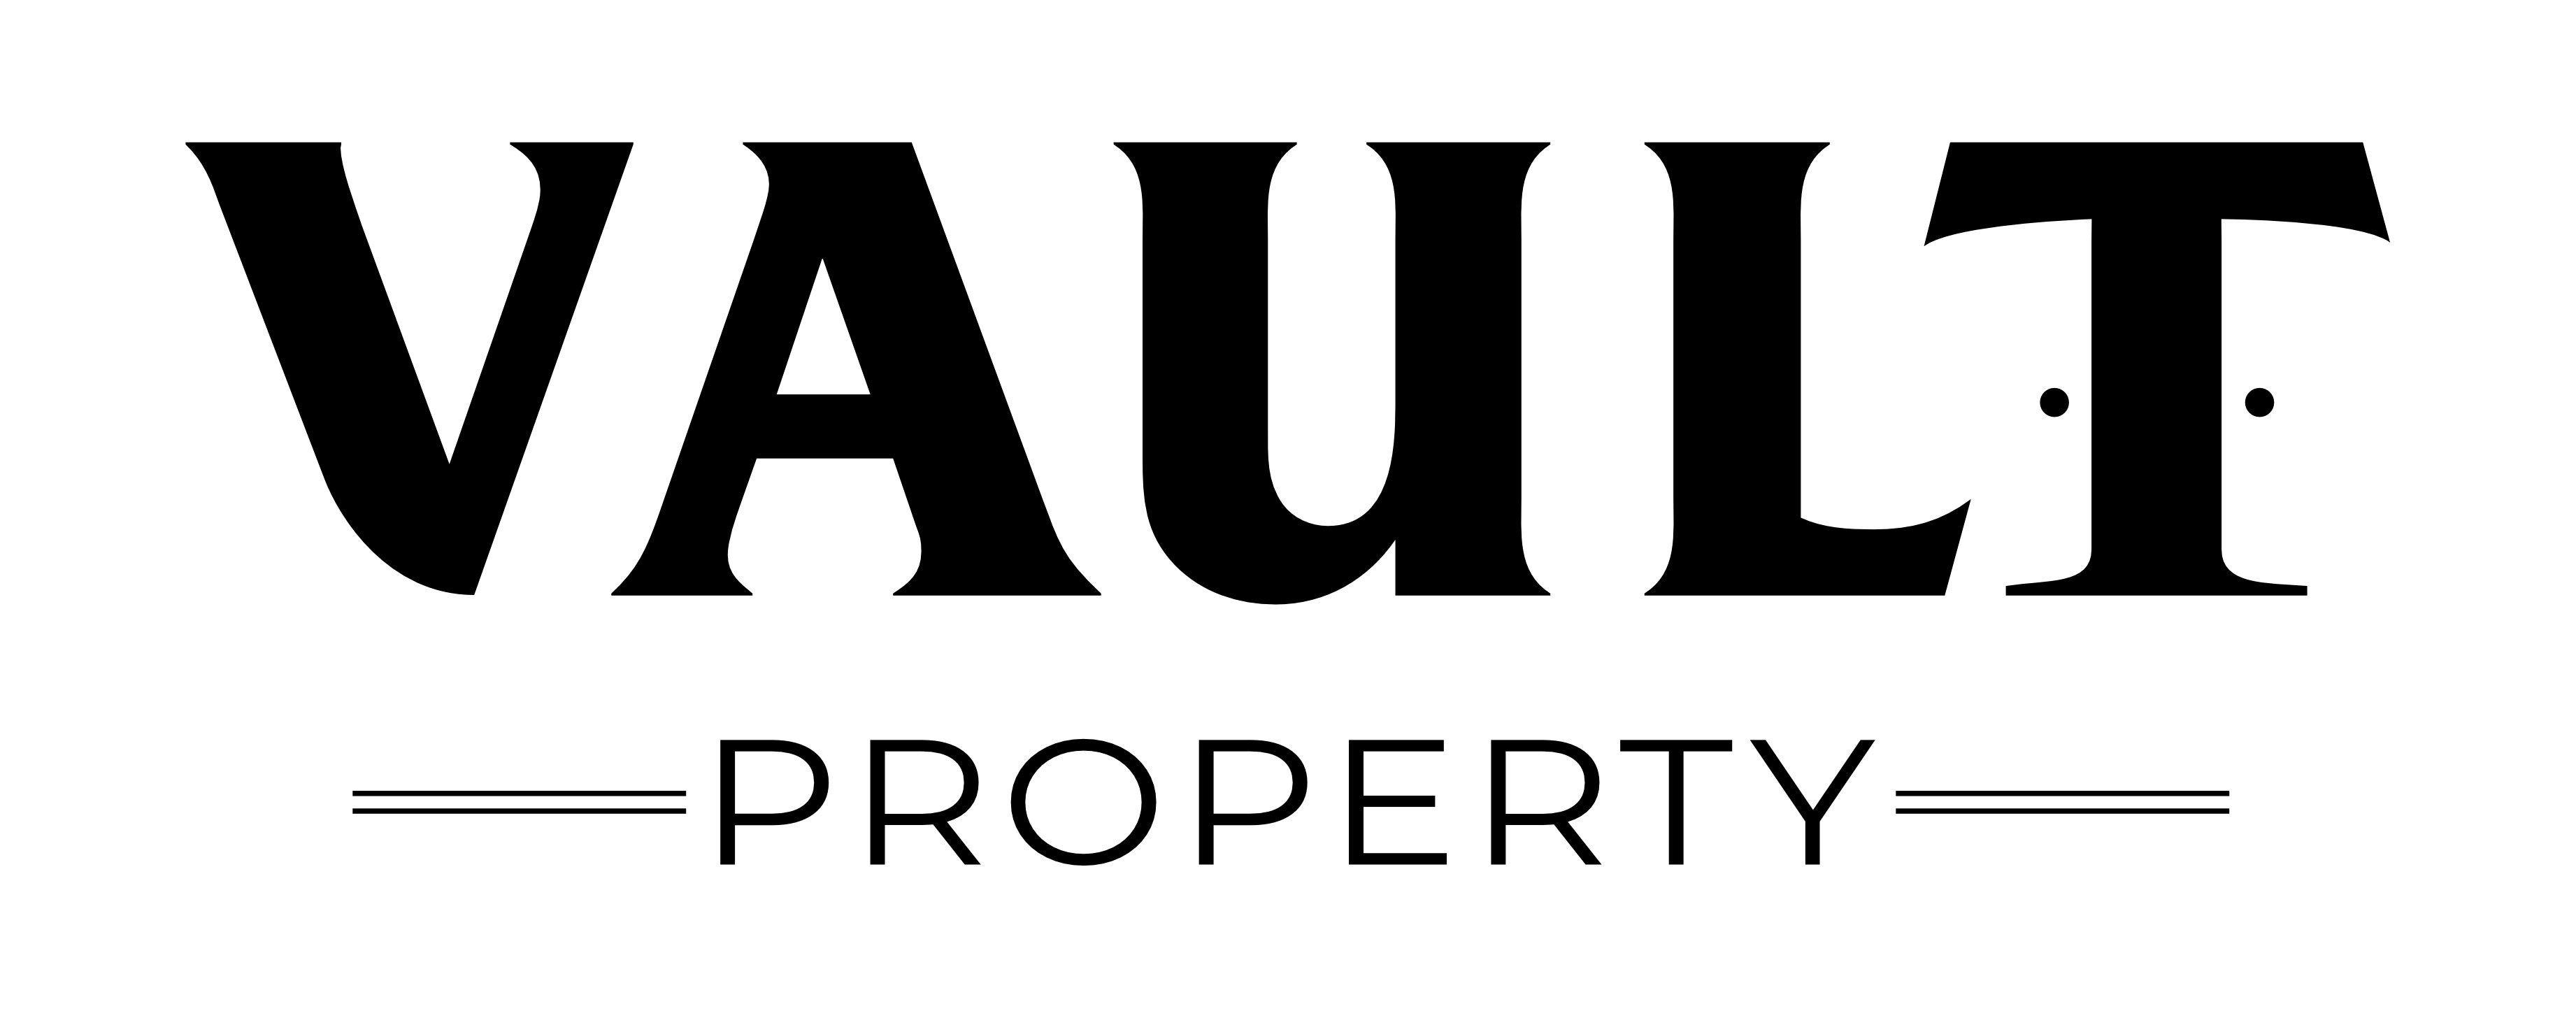 Vault Property Pty Ltd  Logo